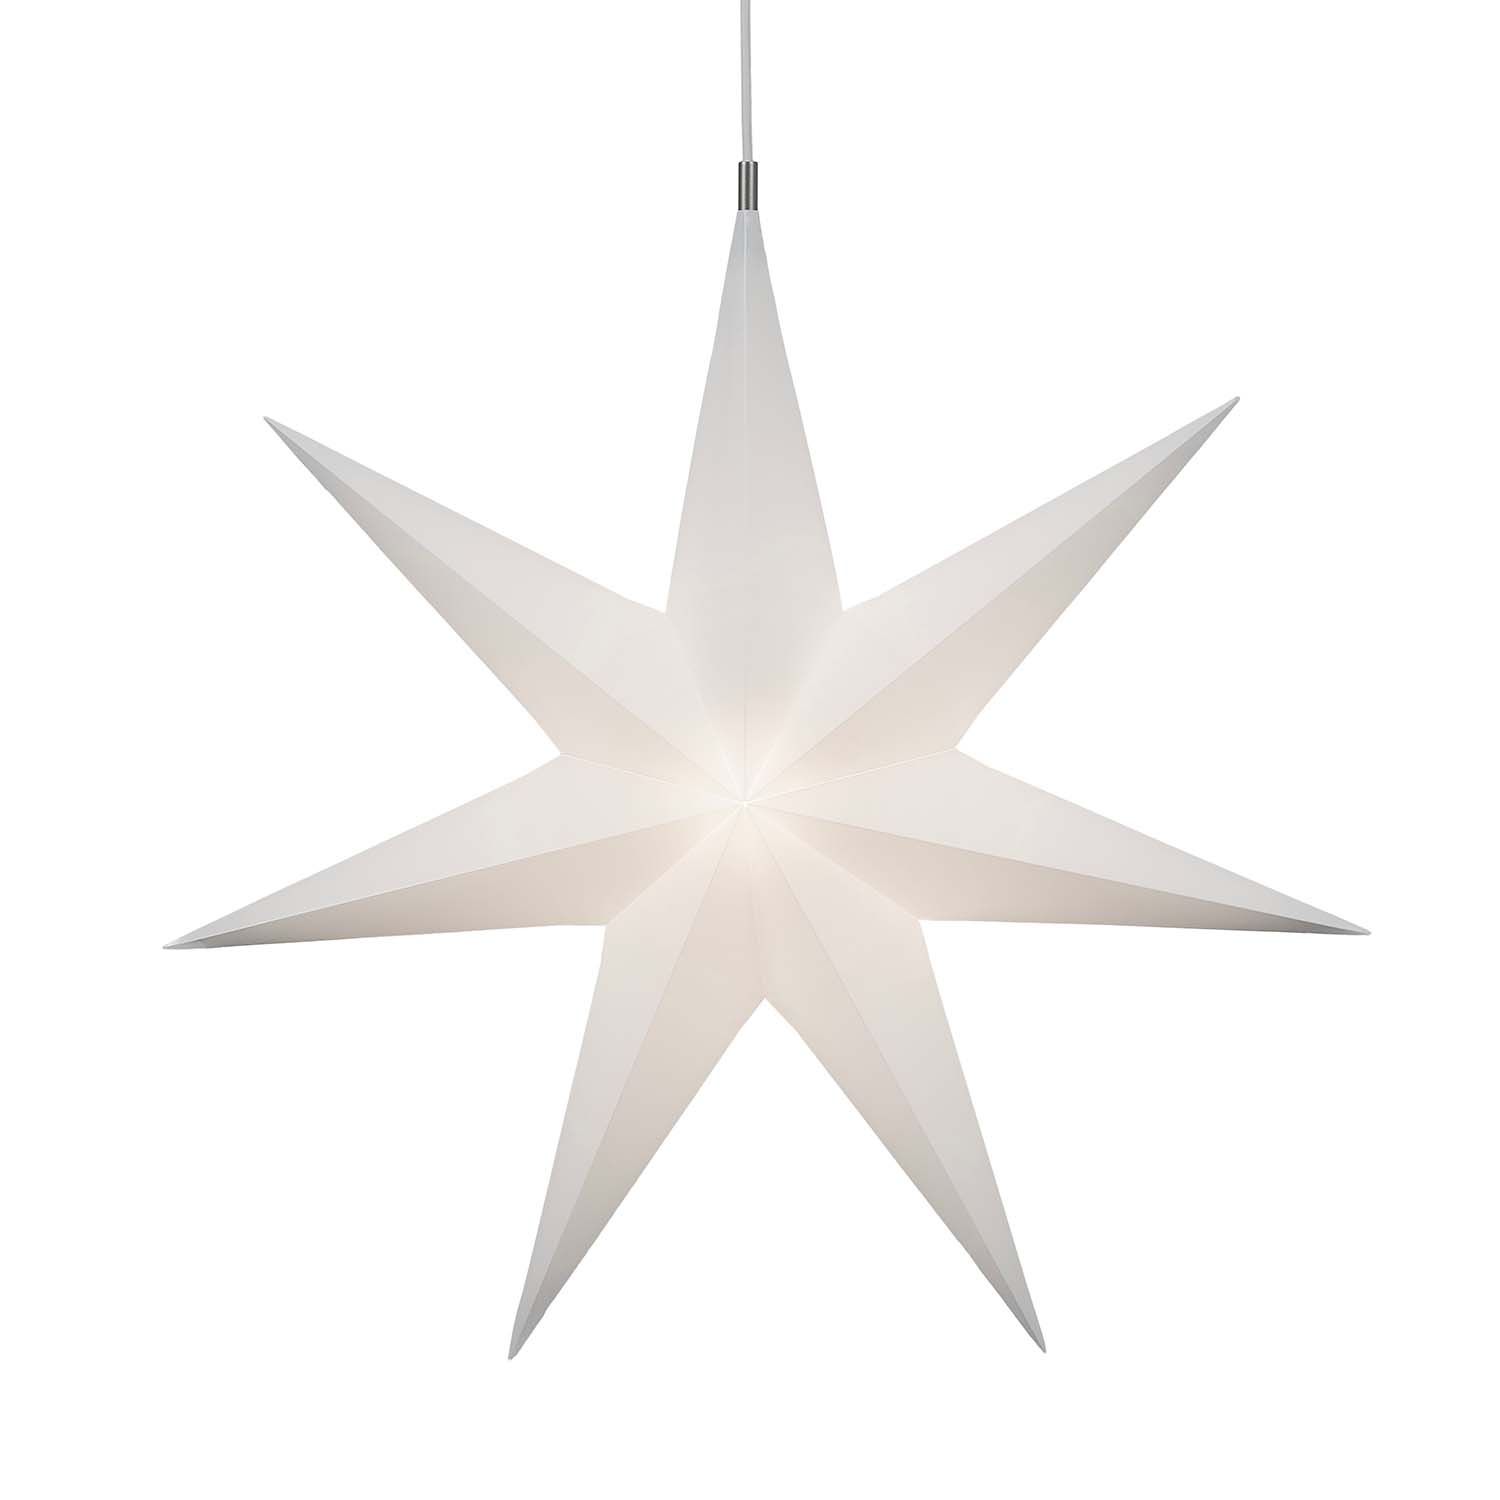 TWINKLE STAR - Star pendant light in hand-folded white PVC